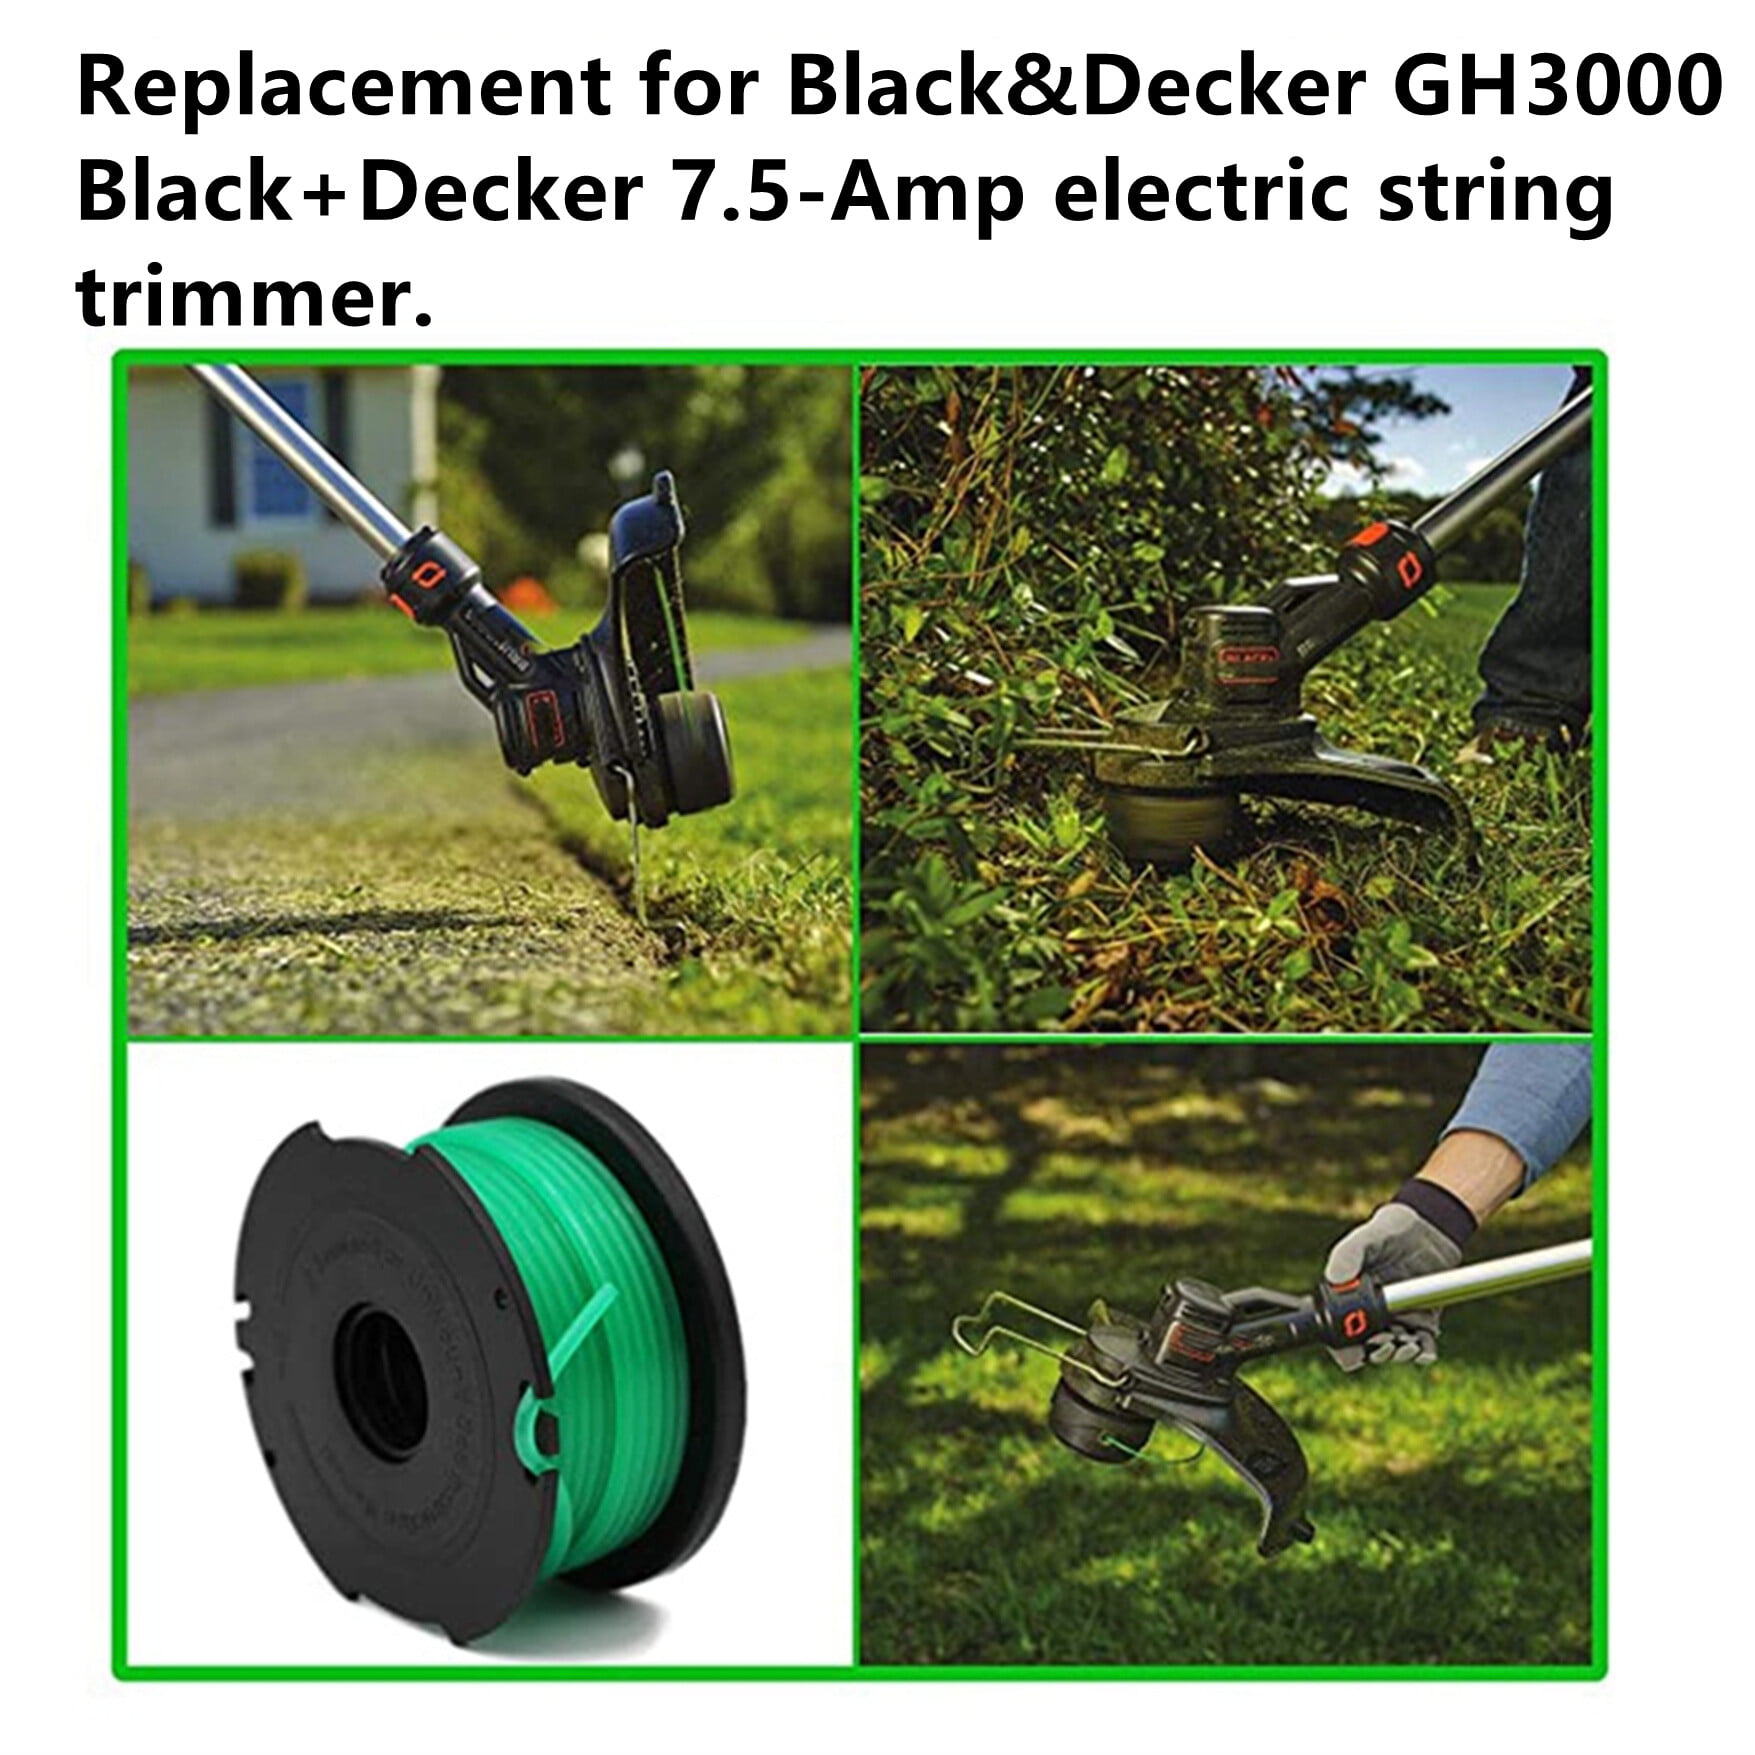  BLACK+DECKER String Trimmer, 7.5-Amp (GH3000) : Black